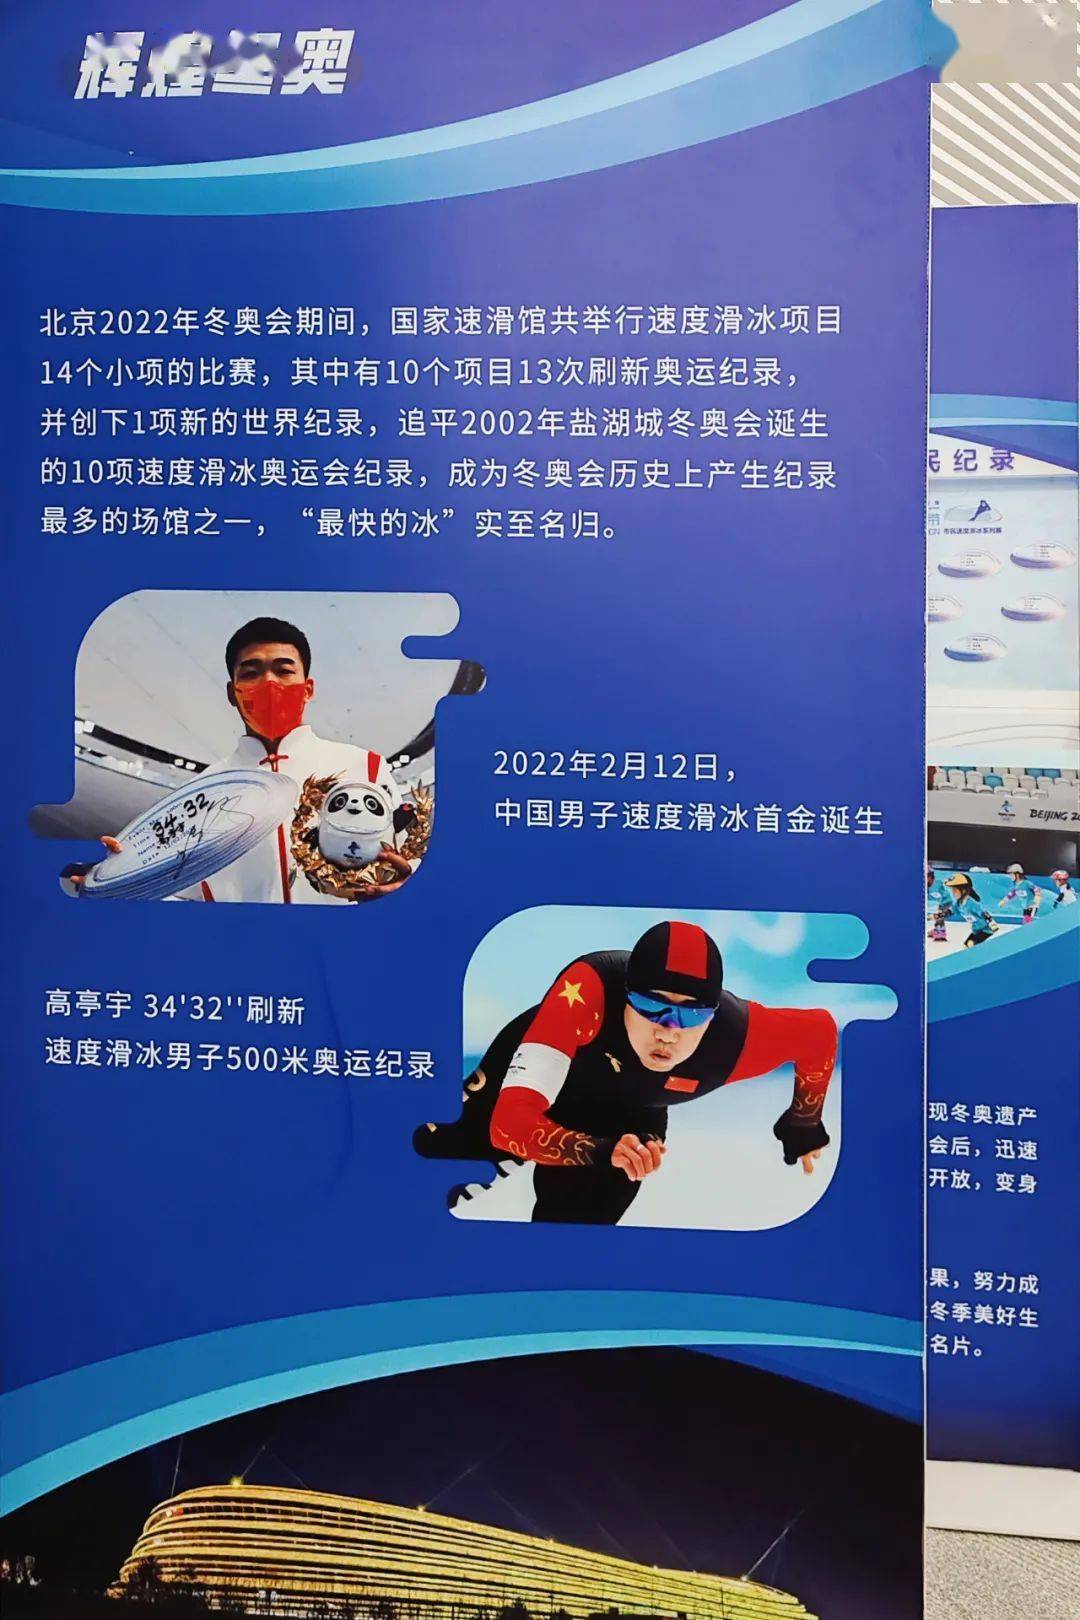 还张贴了我国运动员高亭宇打破速度滑冰男子500米奥运纪录的海报,夺冠